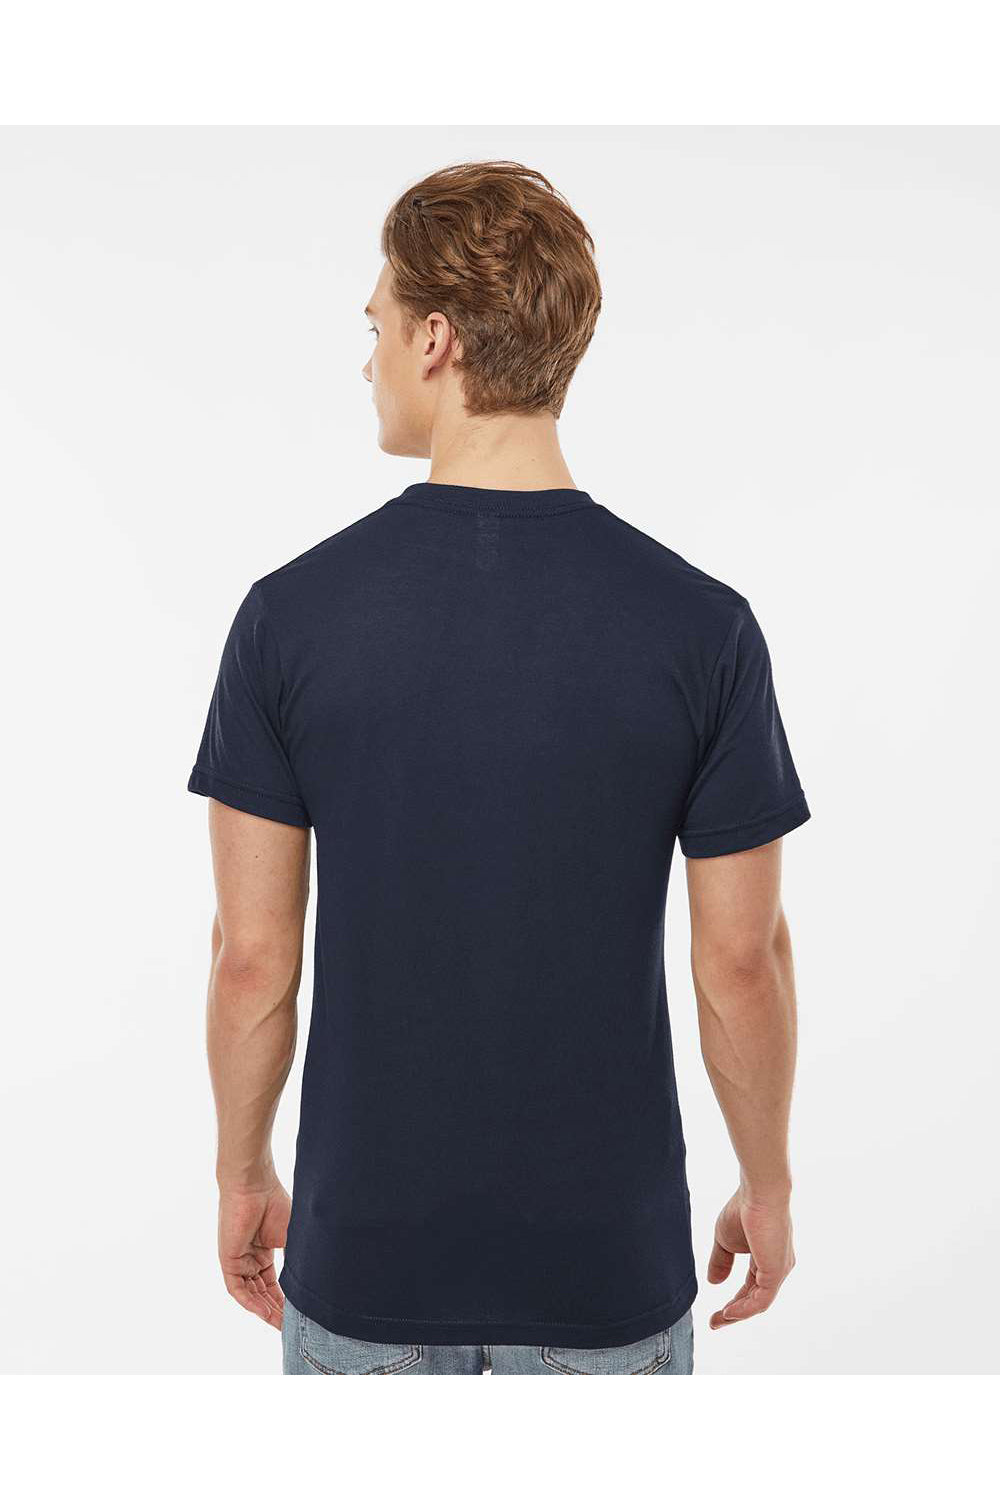 Tultex 207 Mens Poly-Rich Short Sleeve V-Neck T-Shirt Navy Blue Model Back